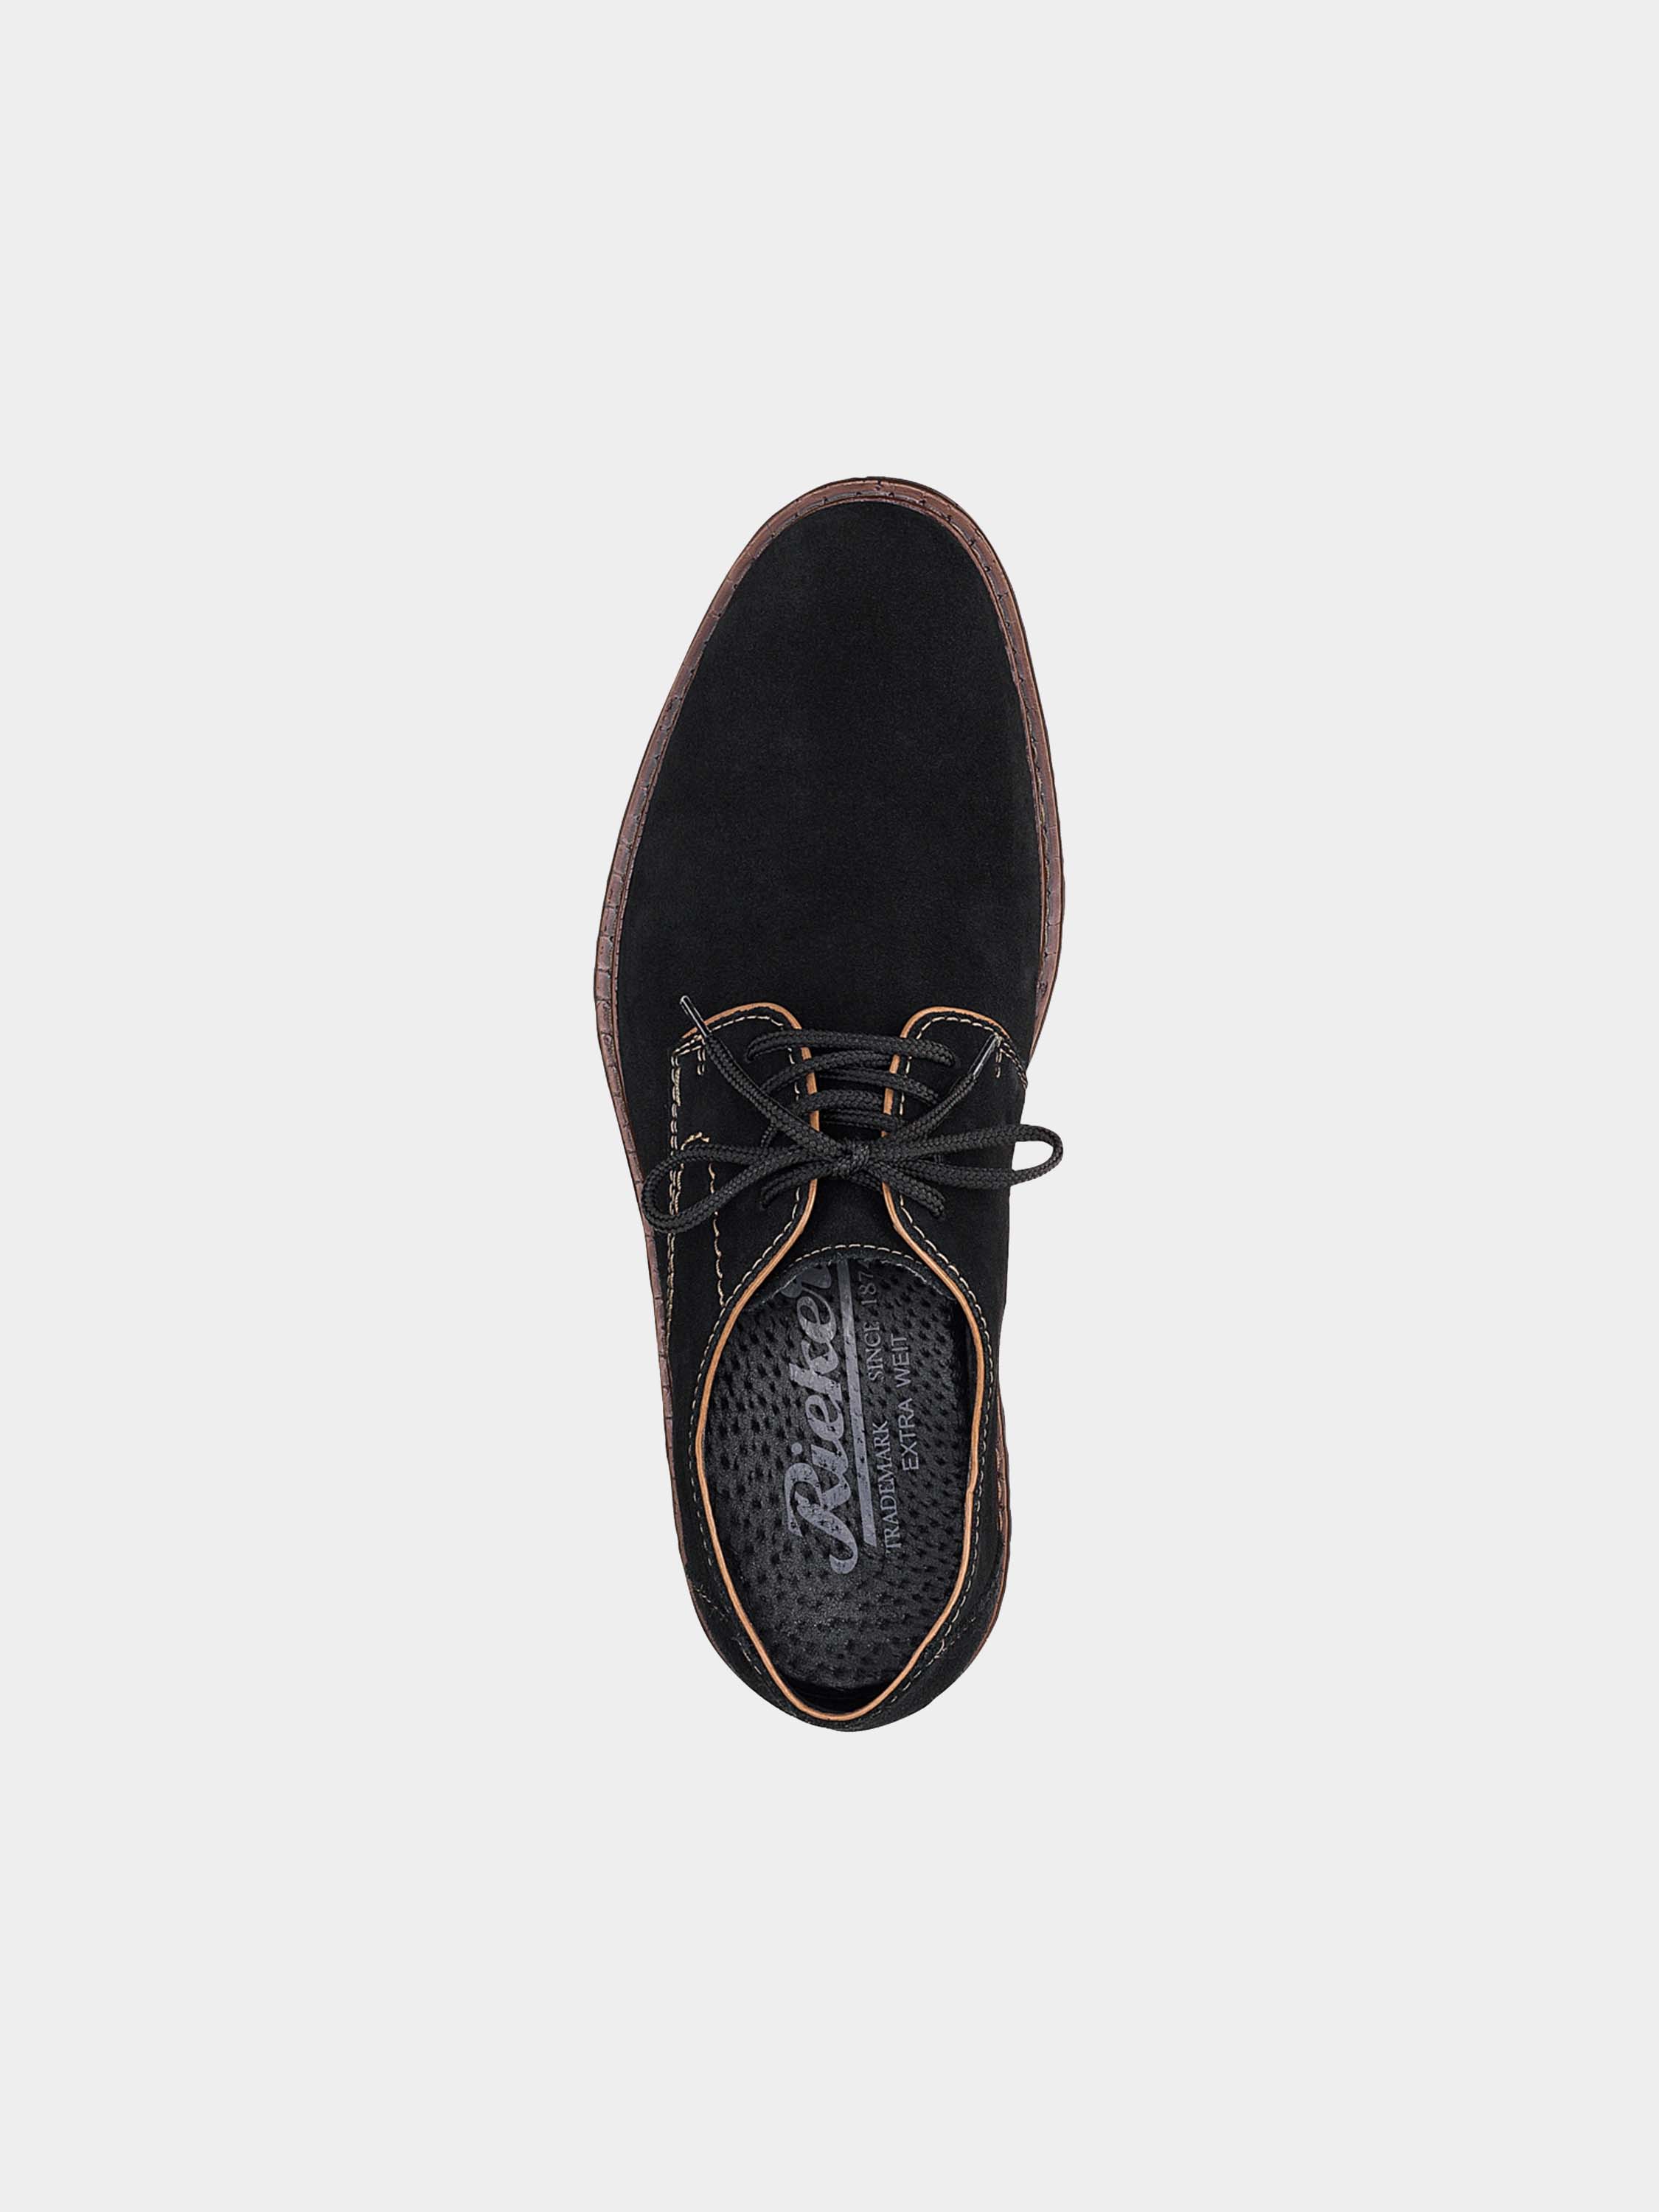 Rieker 17622 Men's Formal Suede Shoes #color_Black